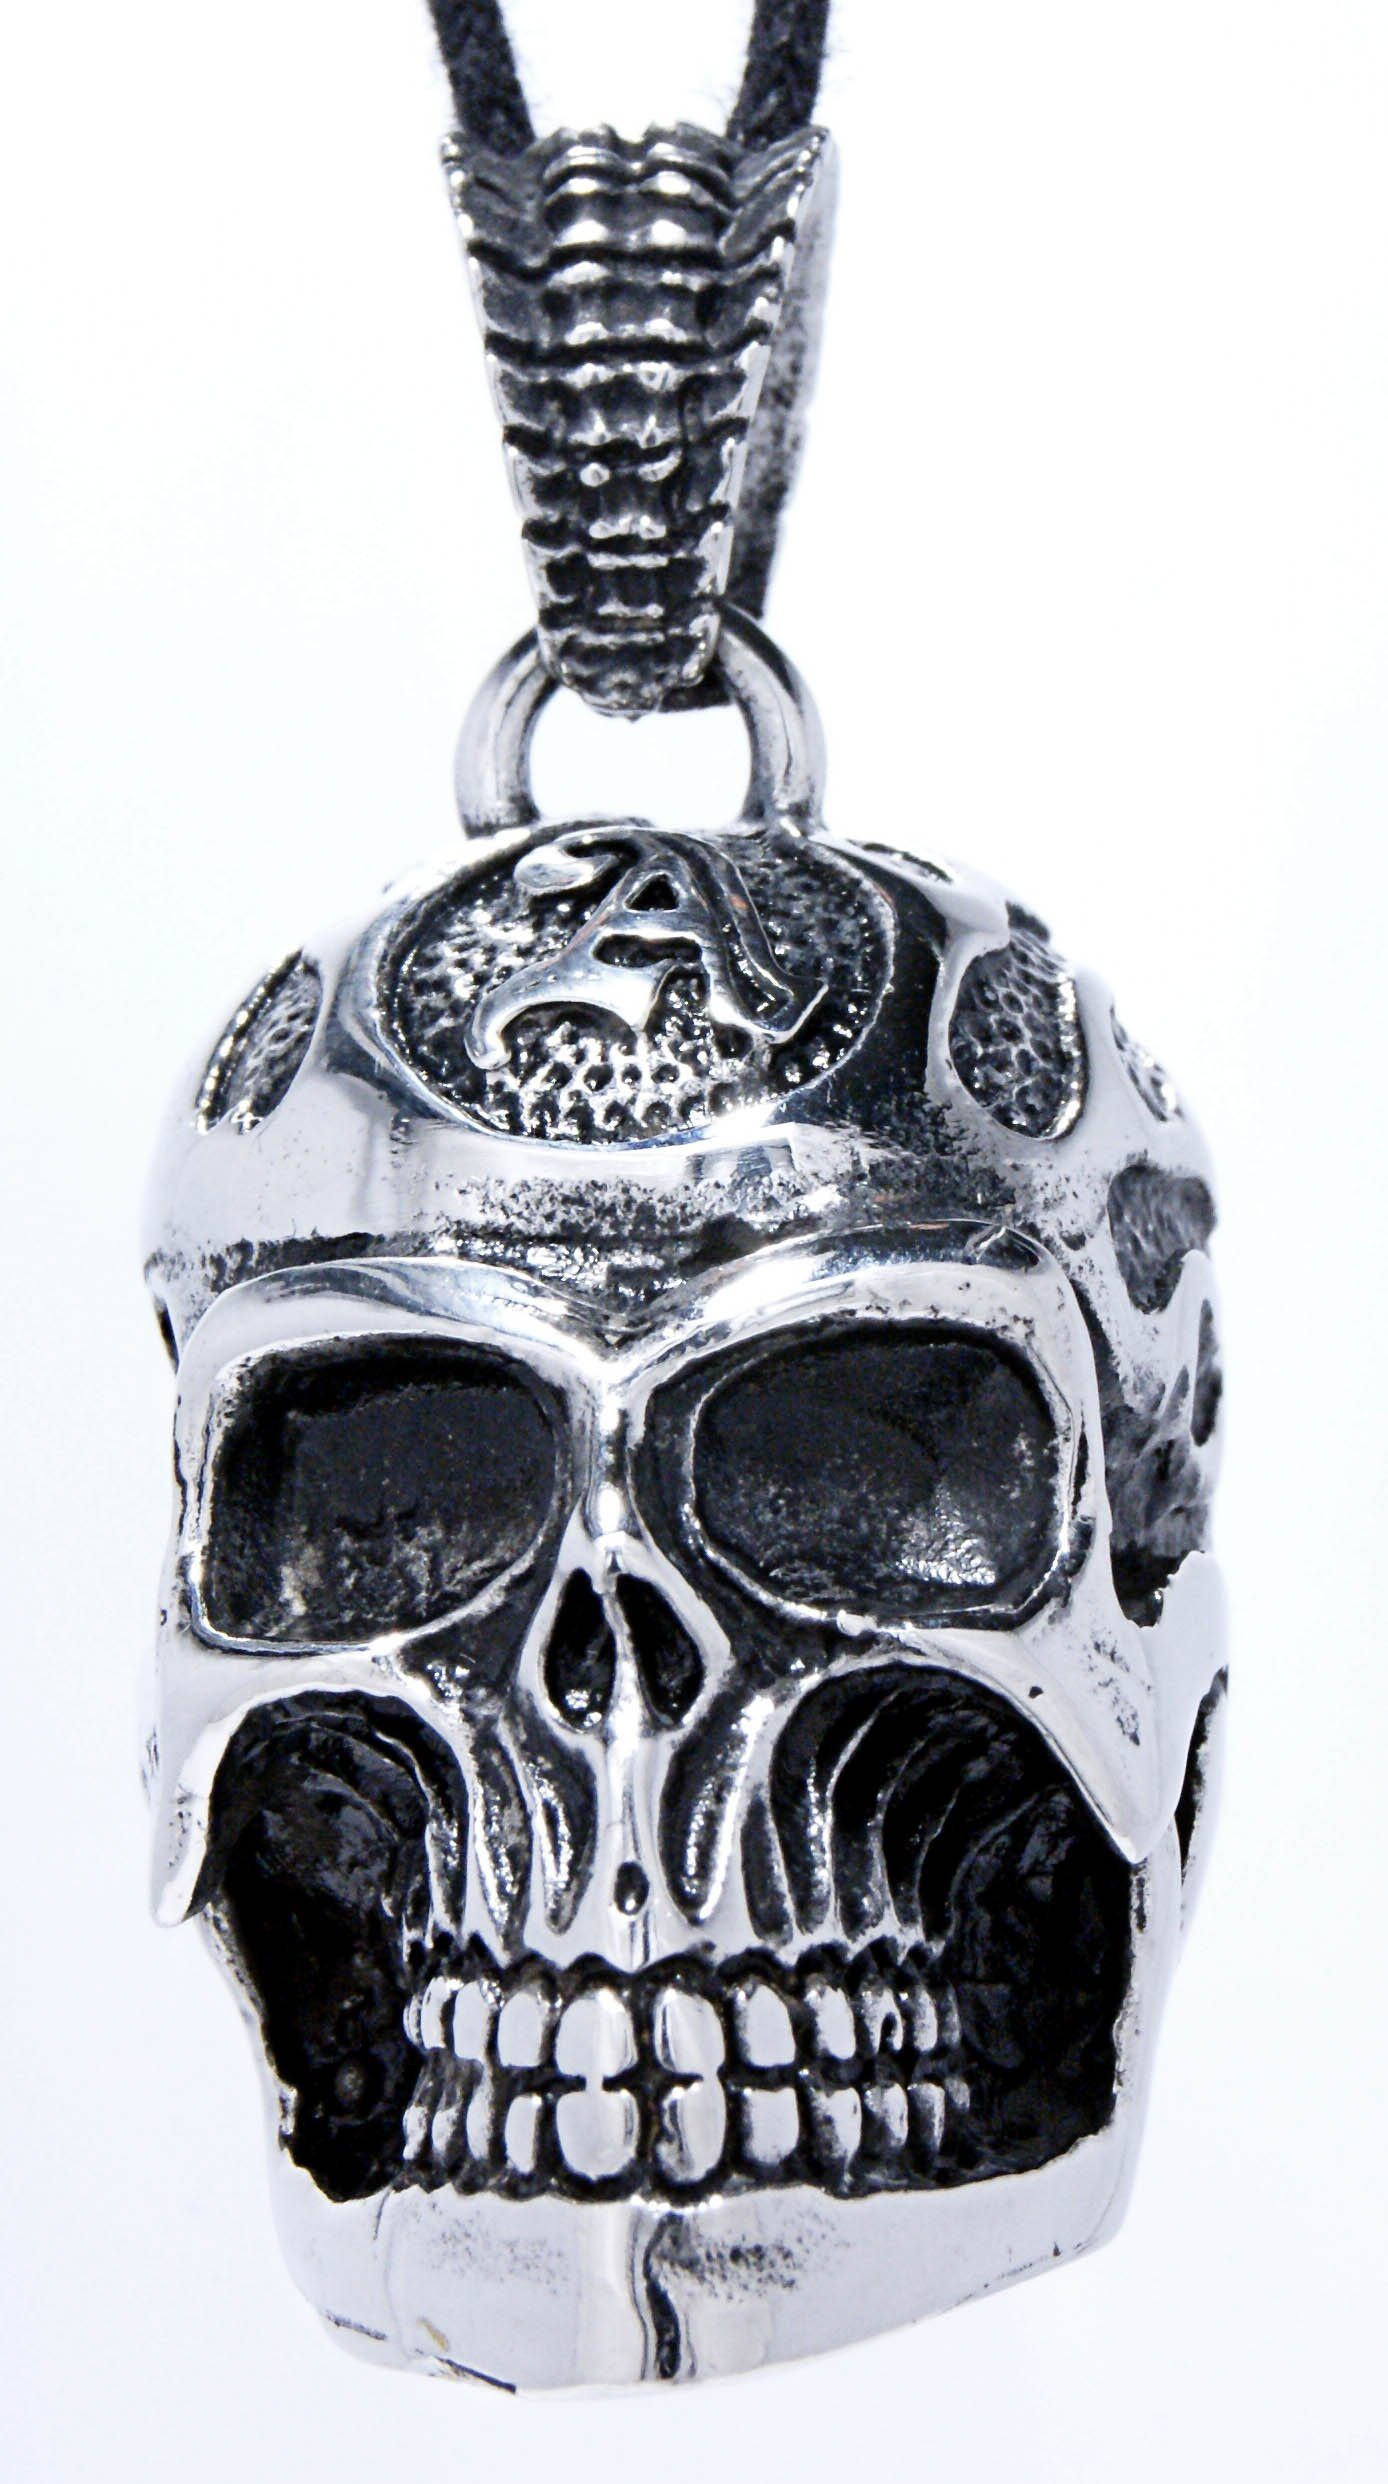 Kiss of Leather Totenkopf Skull Edelstahl Kettenanhänger großer dreidimensional Schädel Anhänger